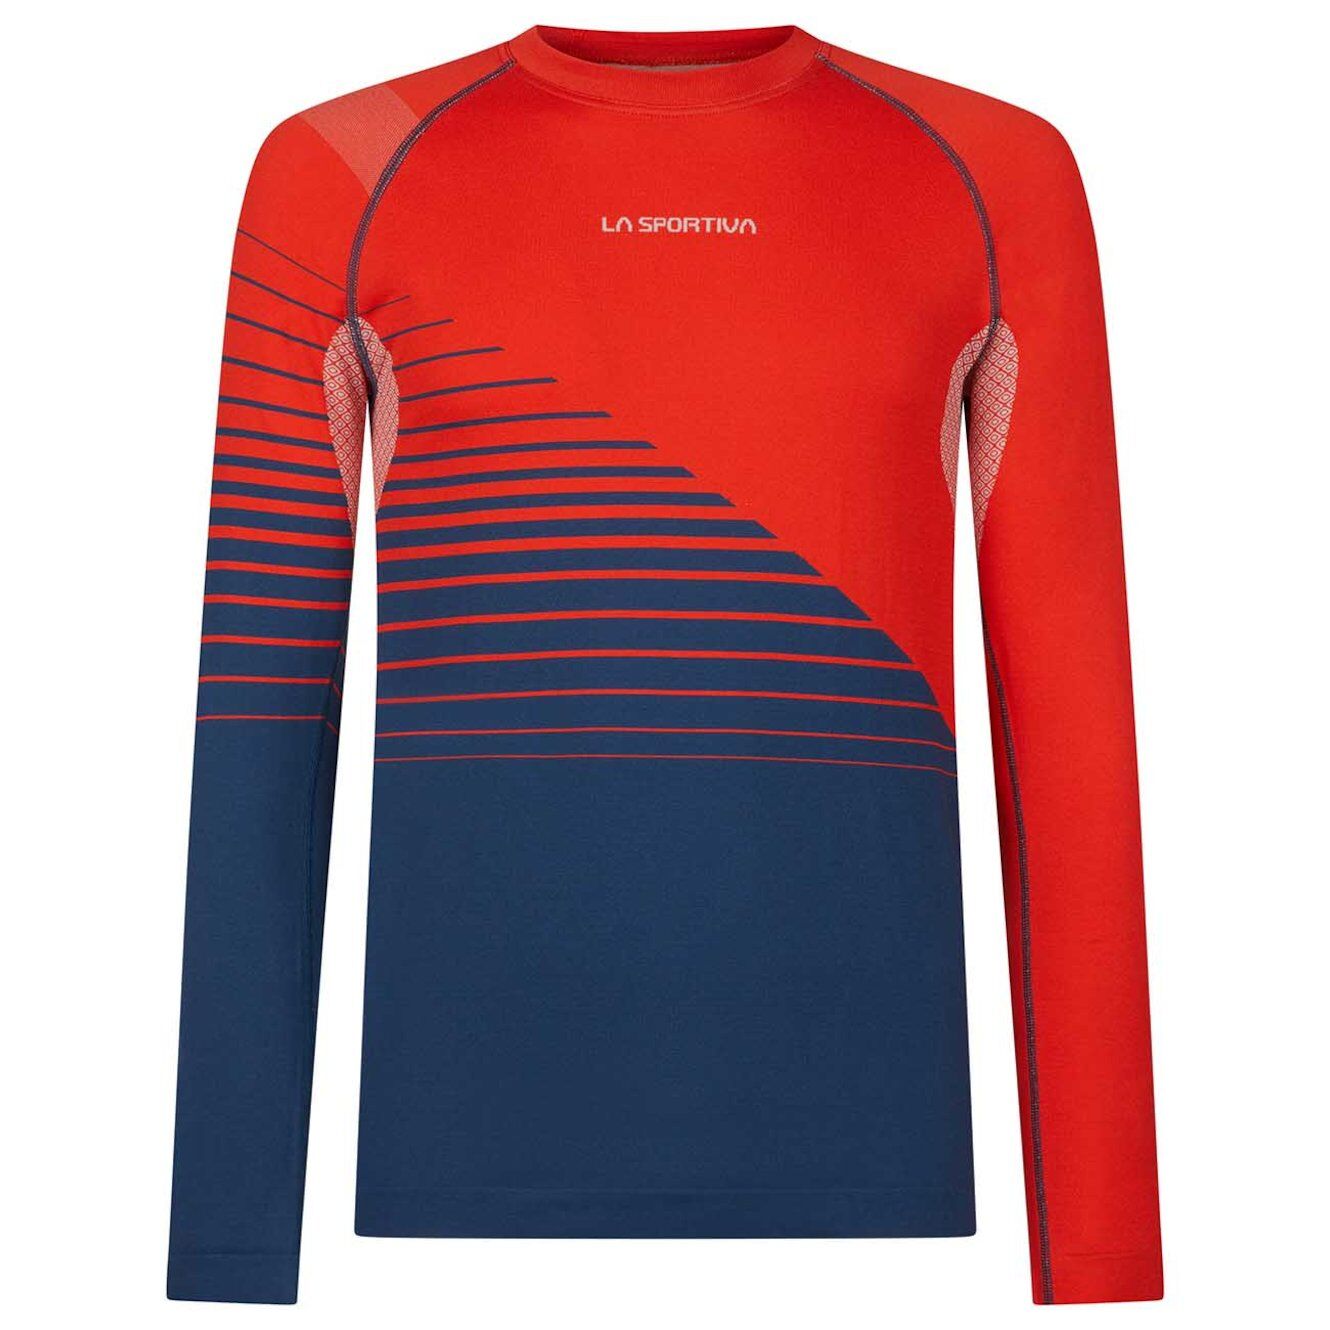 La Sportiva Artic Long Sleeve - Camiseta técnica - Hombre